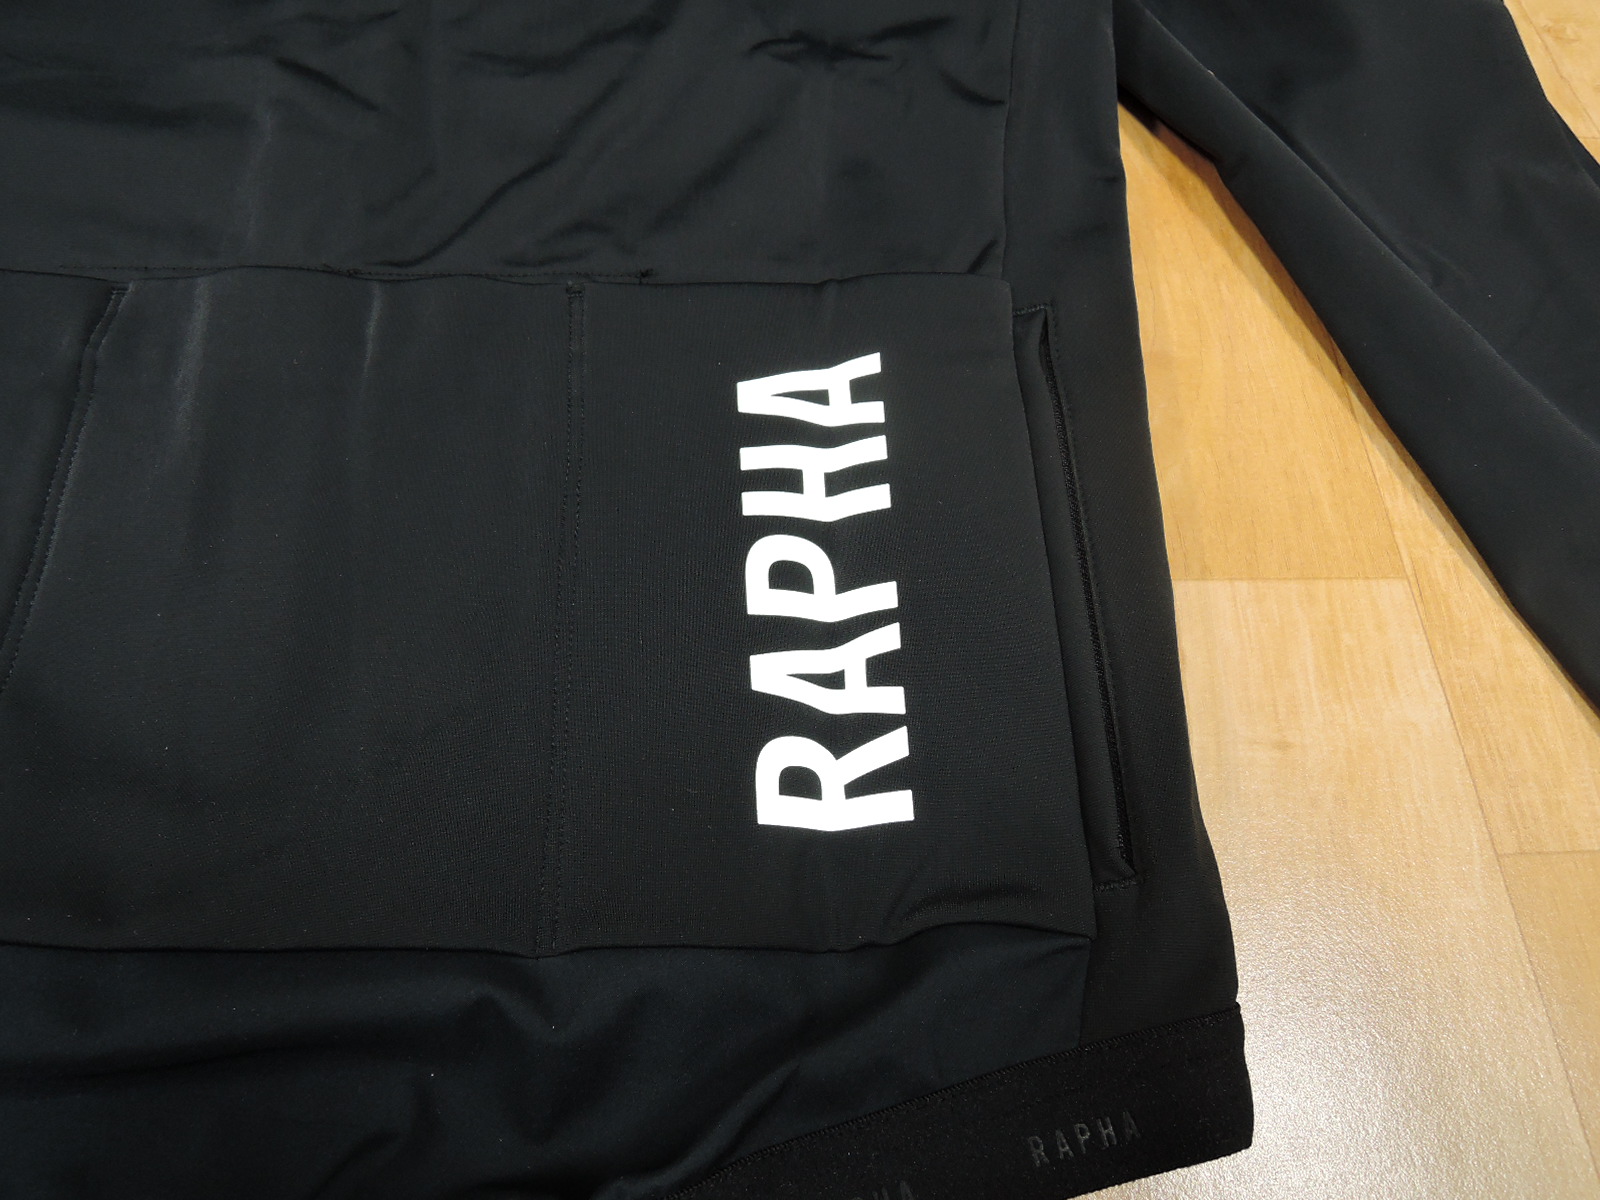 Rapha】PRO TEAM 「Training Jacket」のレビュー